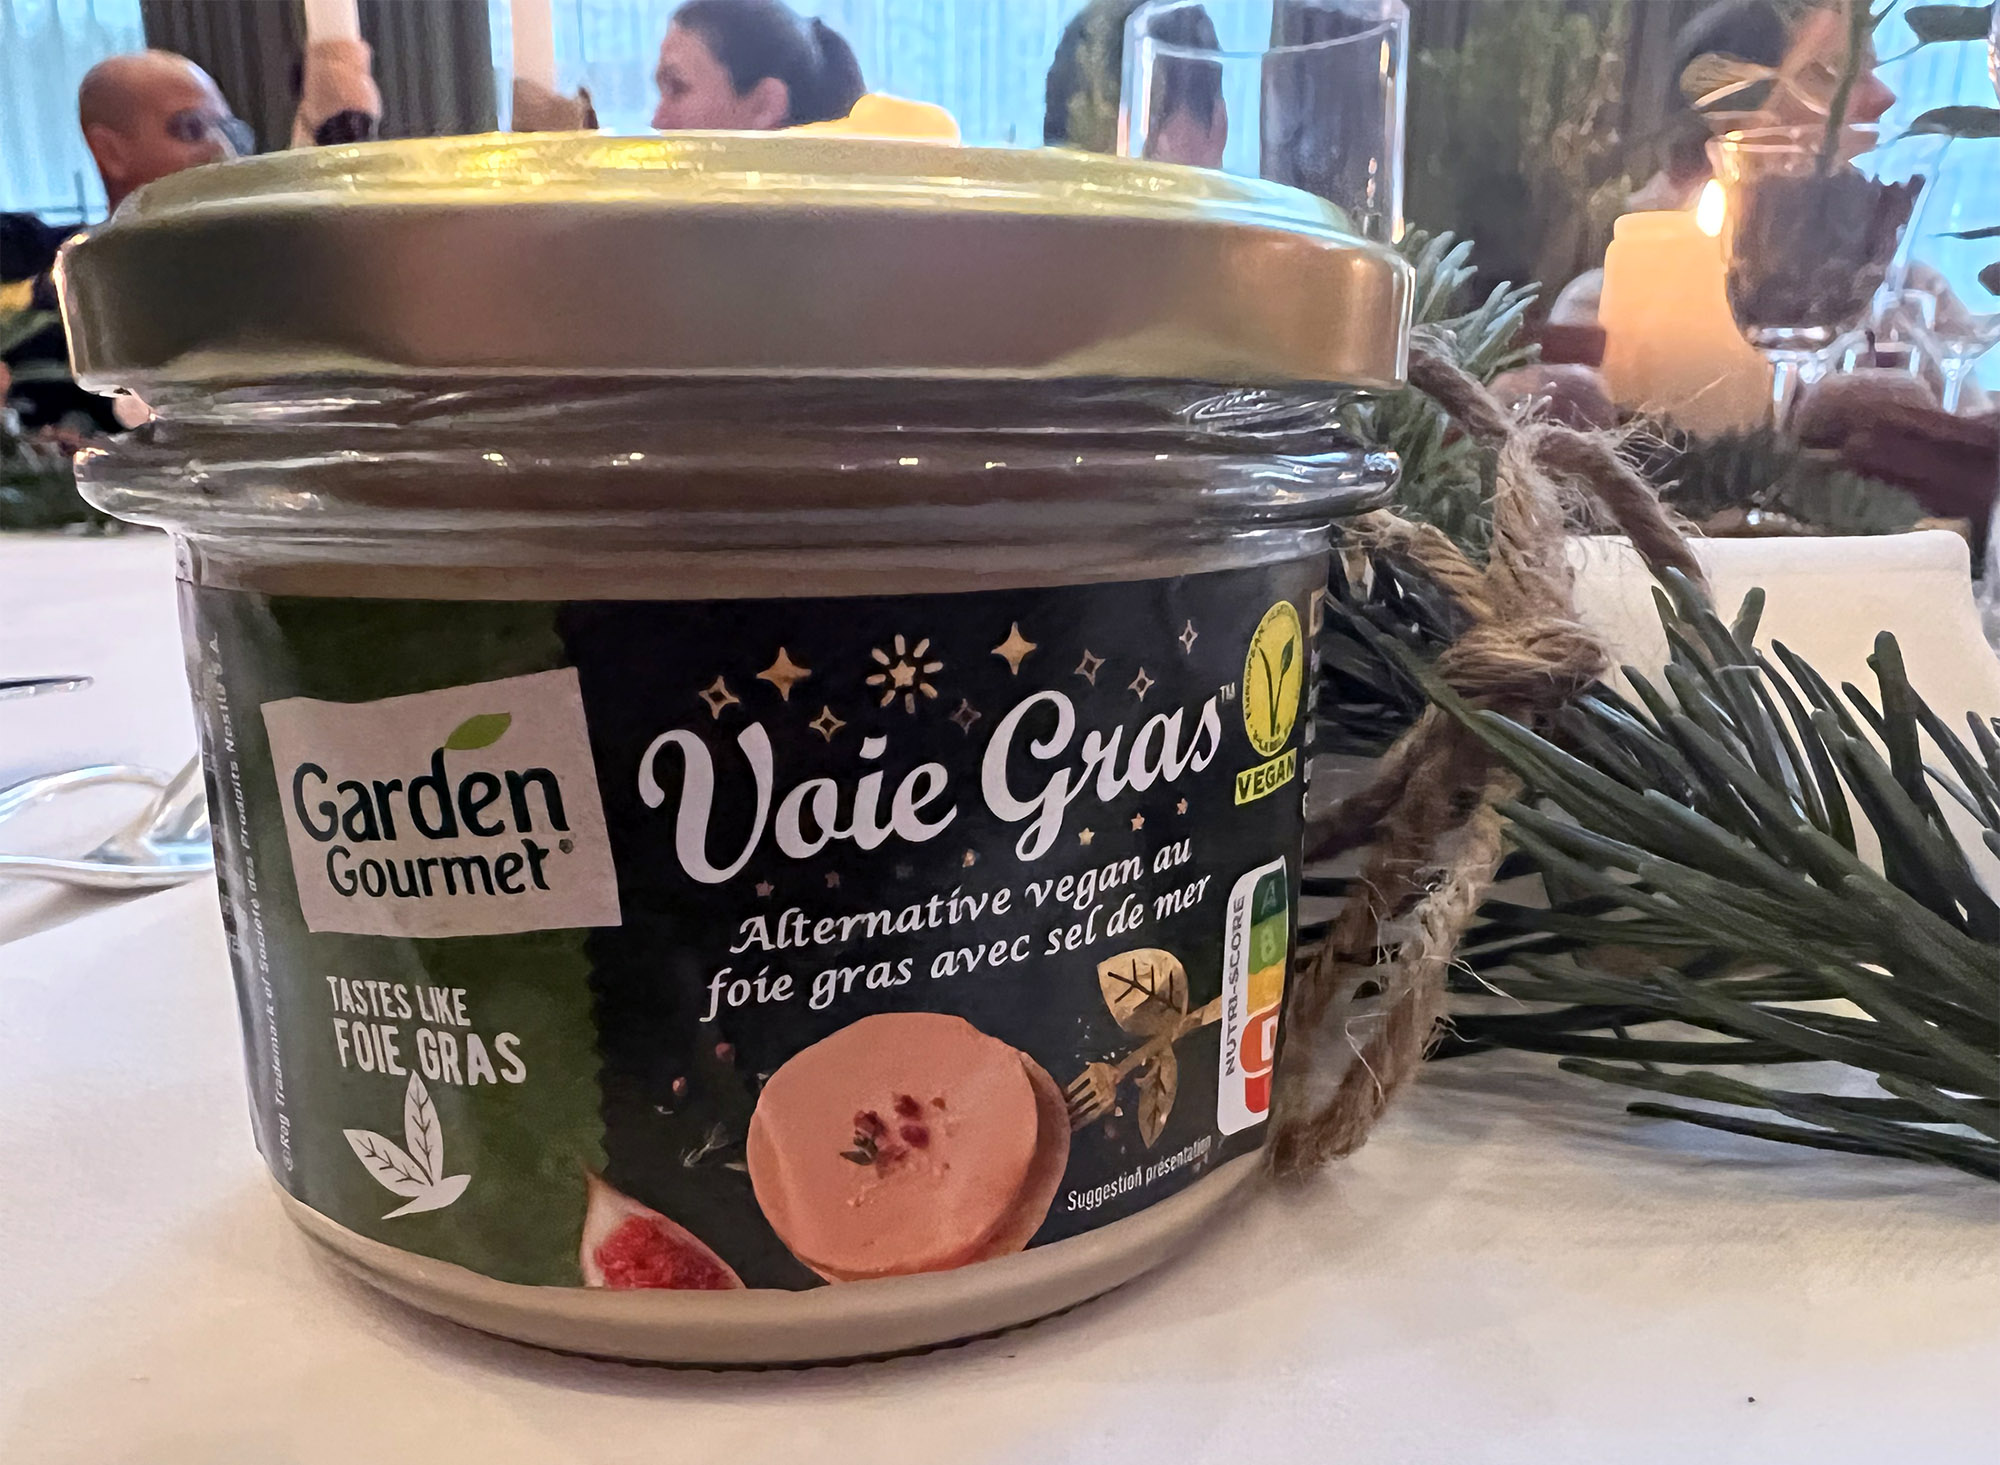 Vegan Foie Gras: Nestle Introduces 'Voie Gras' Amid Controversy